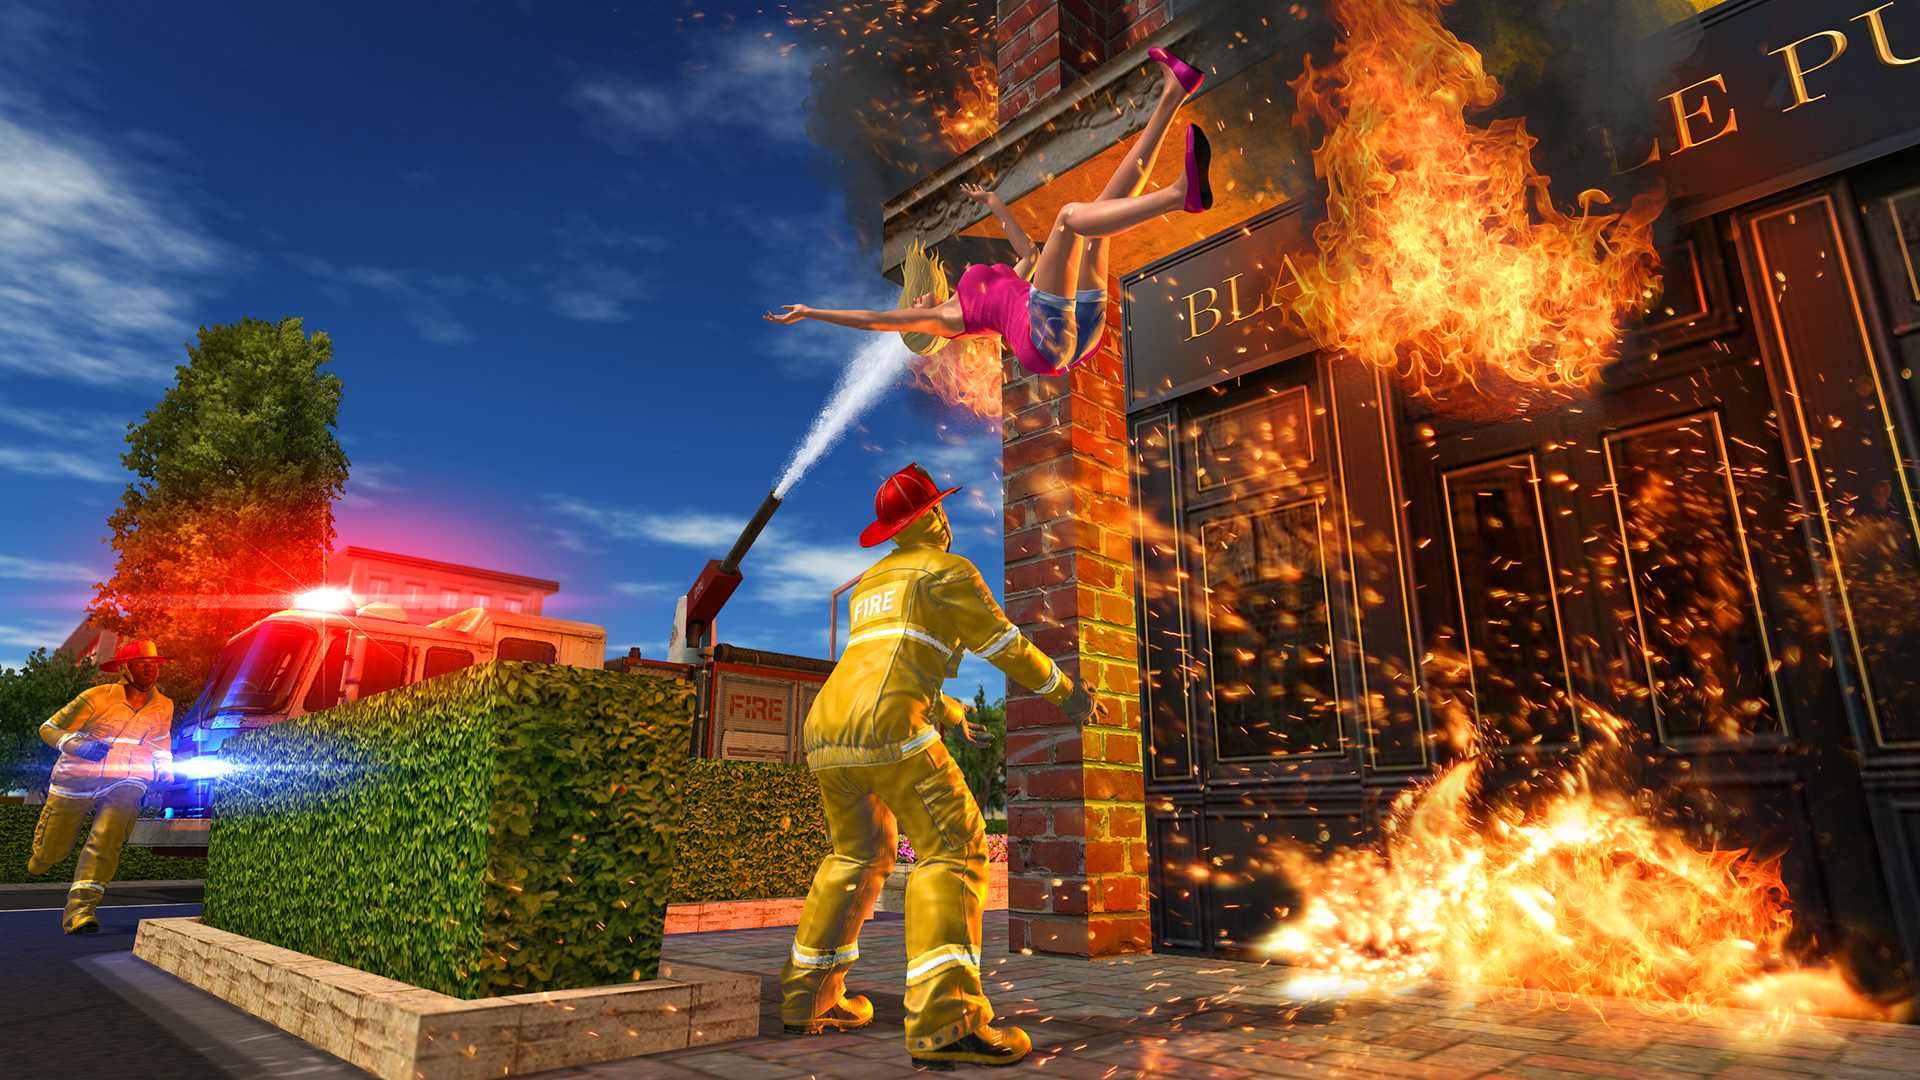 Screenshot 1 of игра пожарная машина 1.1.0